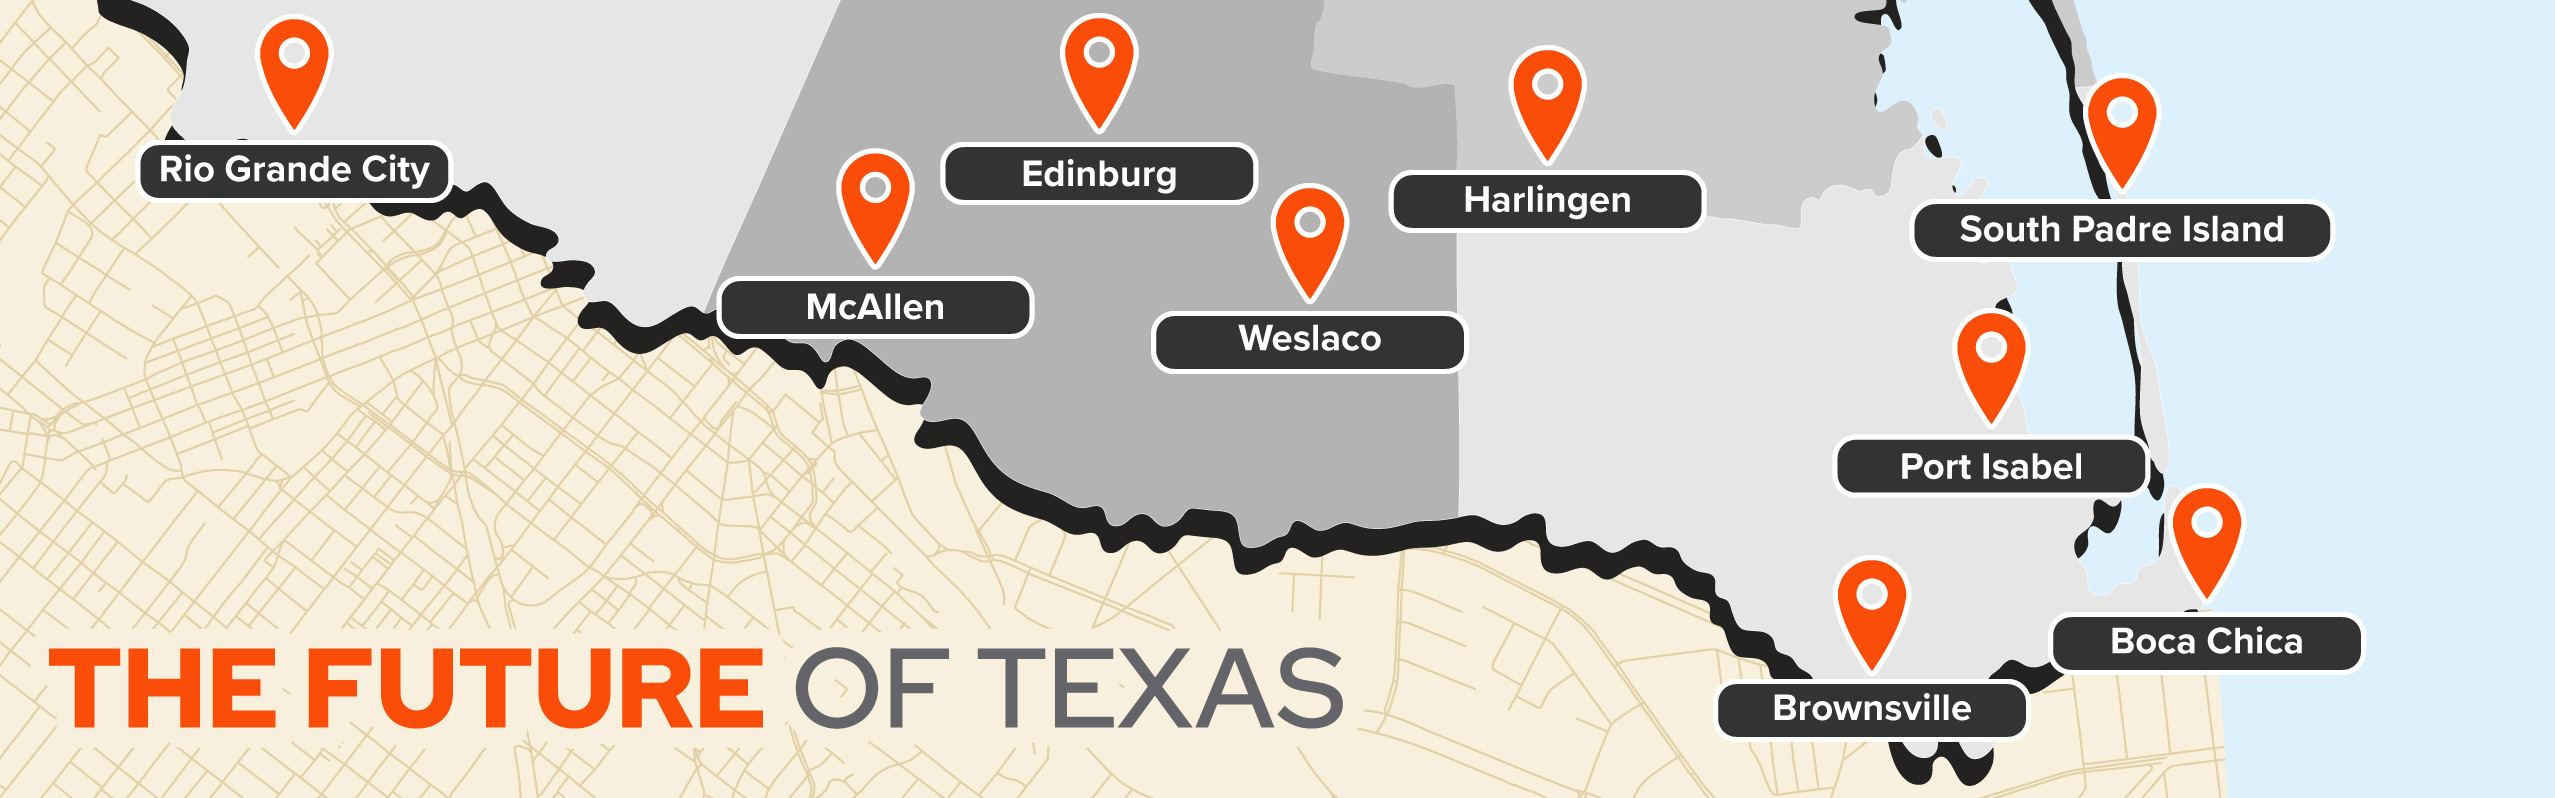 utrgv-map-the-future-of-texas